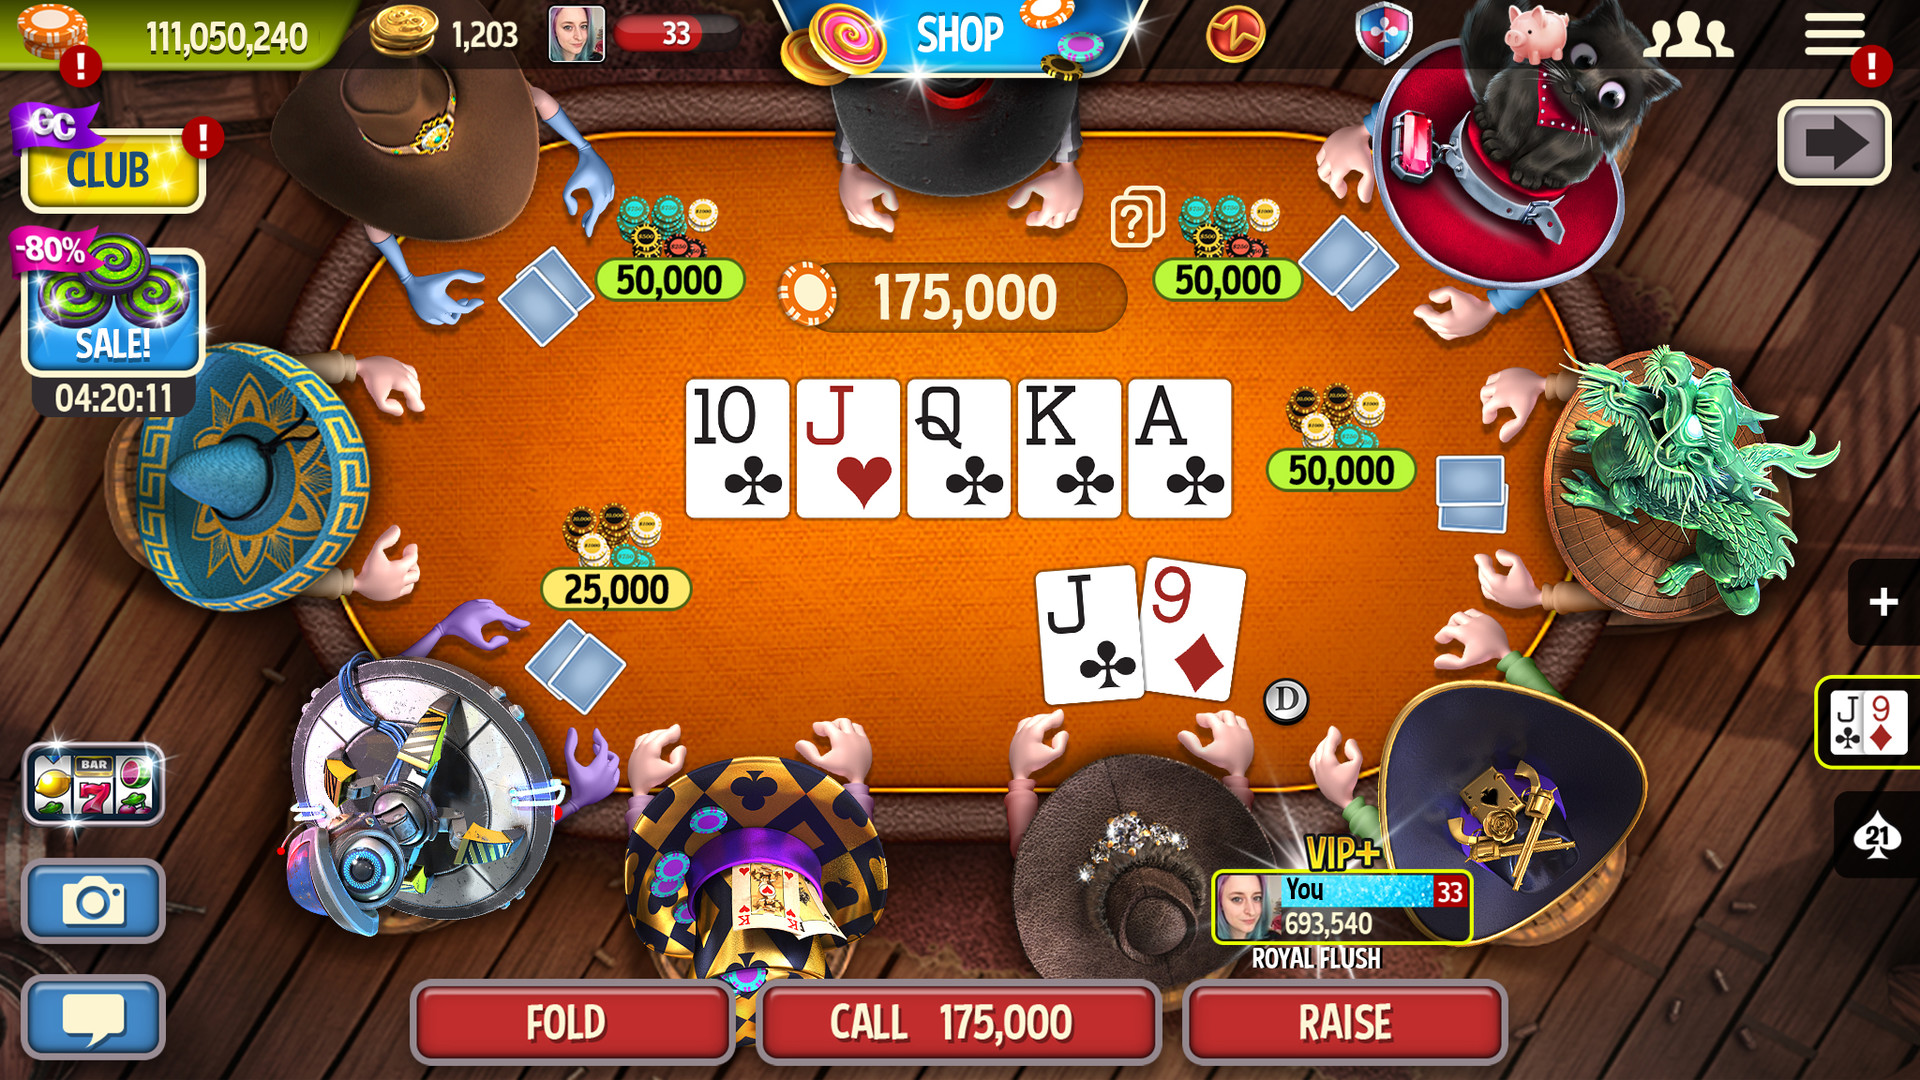 Скачать покер онлайн на пк бесплатно бонусы и акции бк фонбет